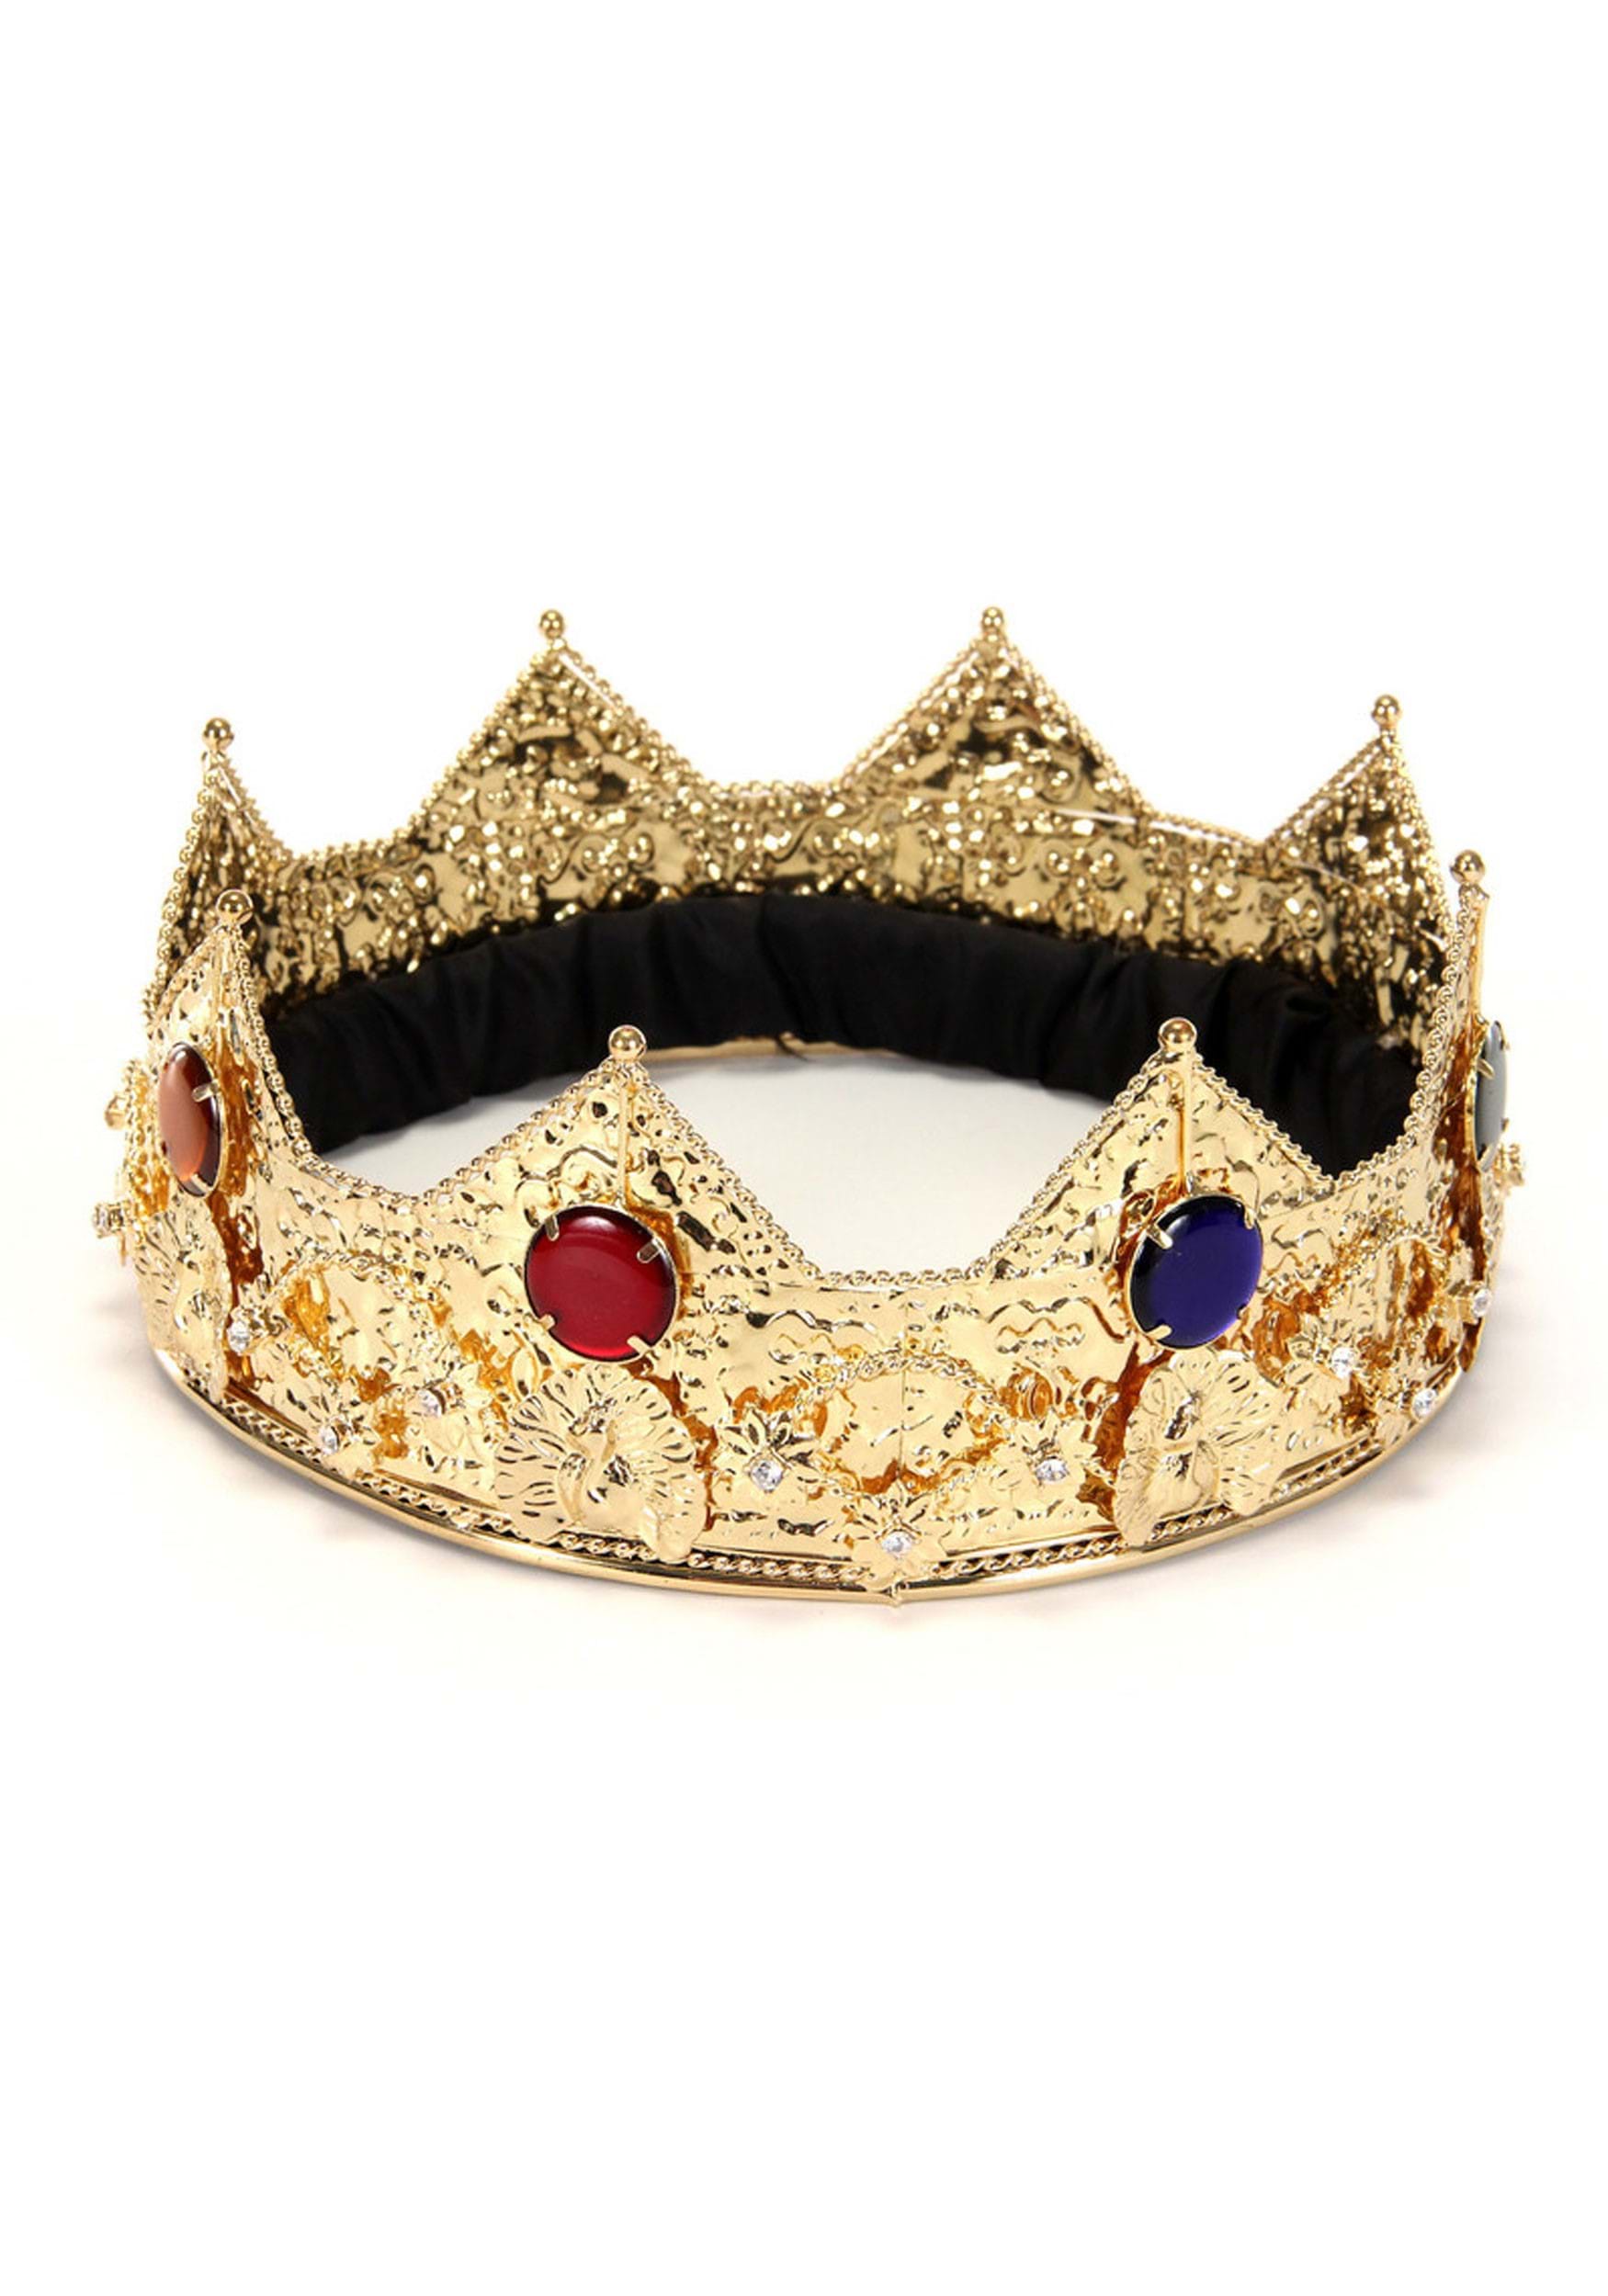 Men's Gold King Fancy Dress Costume Crown